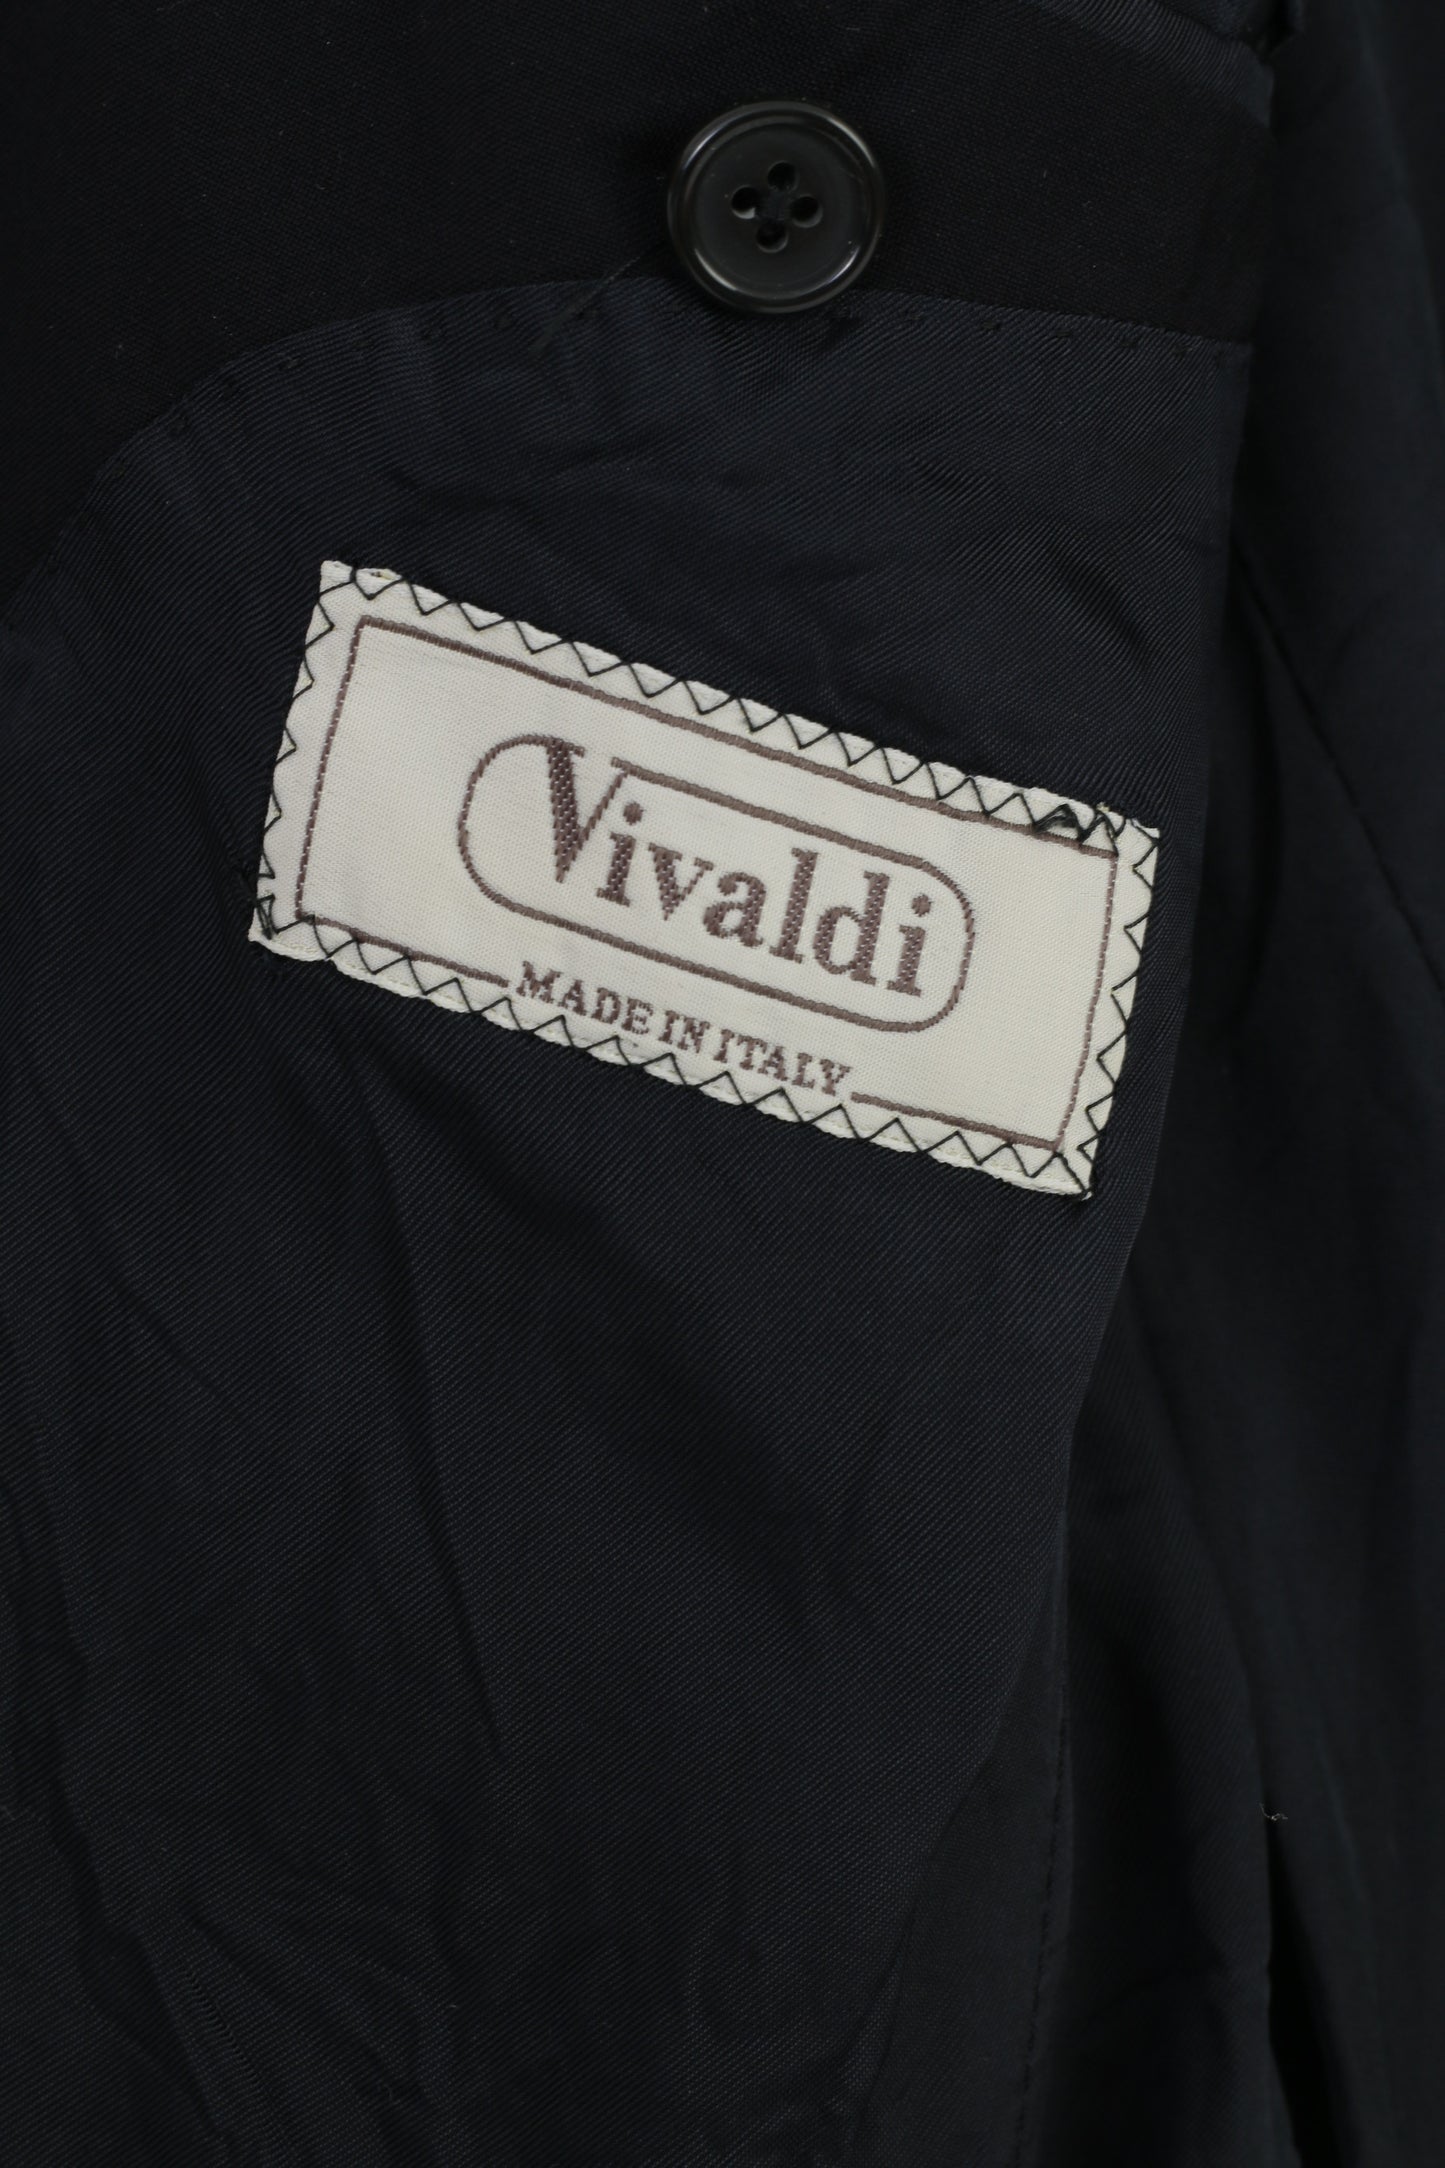 Vivaldi homme 52 Blazer bleu marine col boutonnage laine Super 110'S Lanificio Mario Zegna Spa boutons élégant Vintage haut